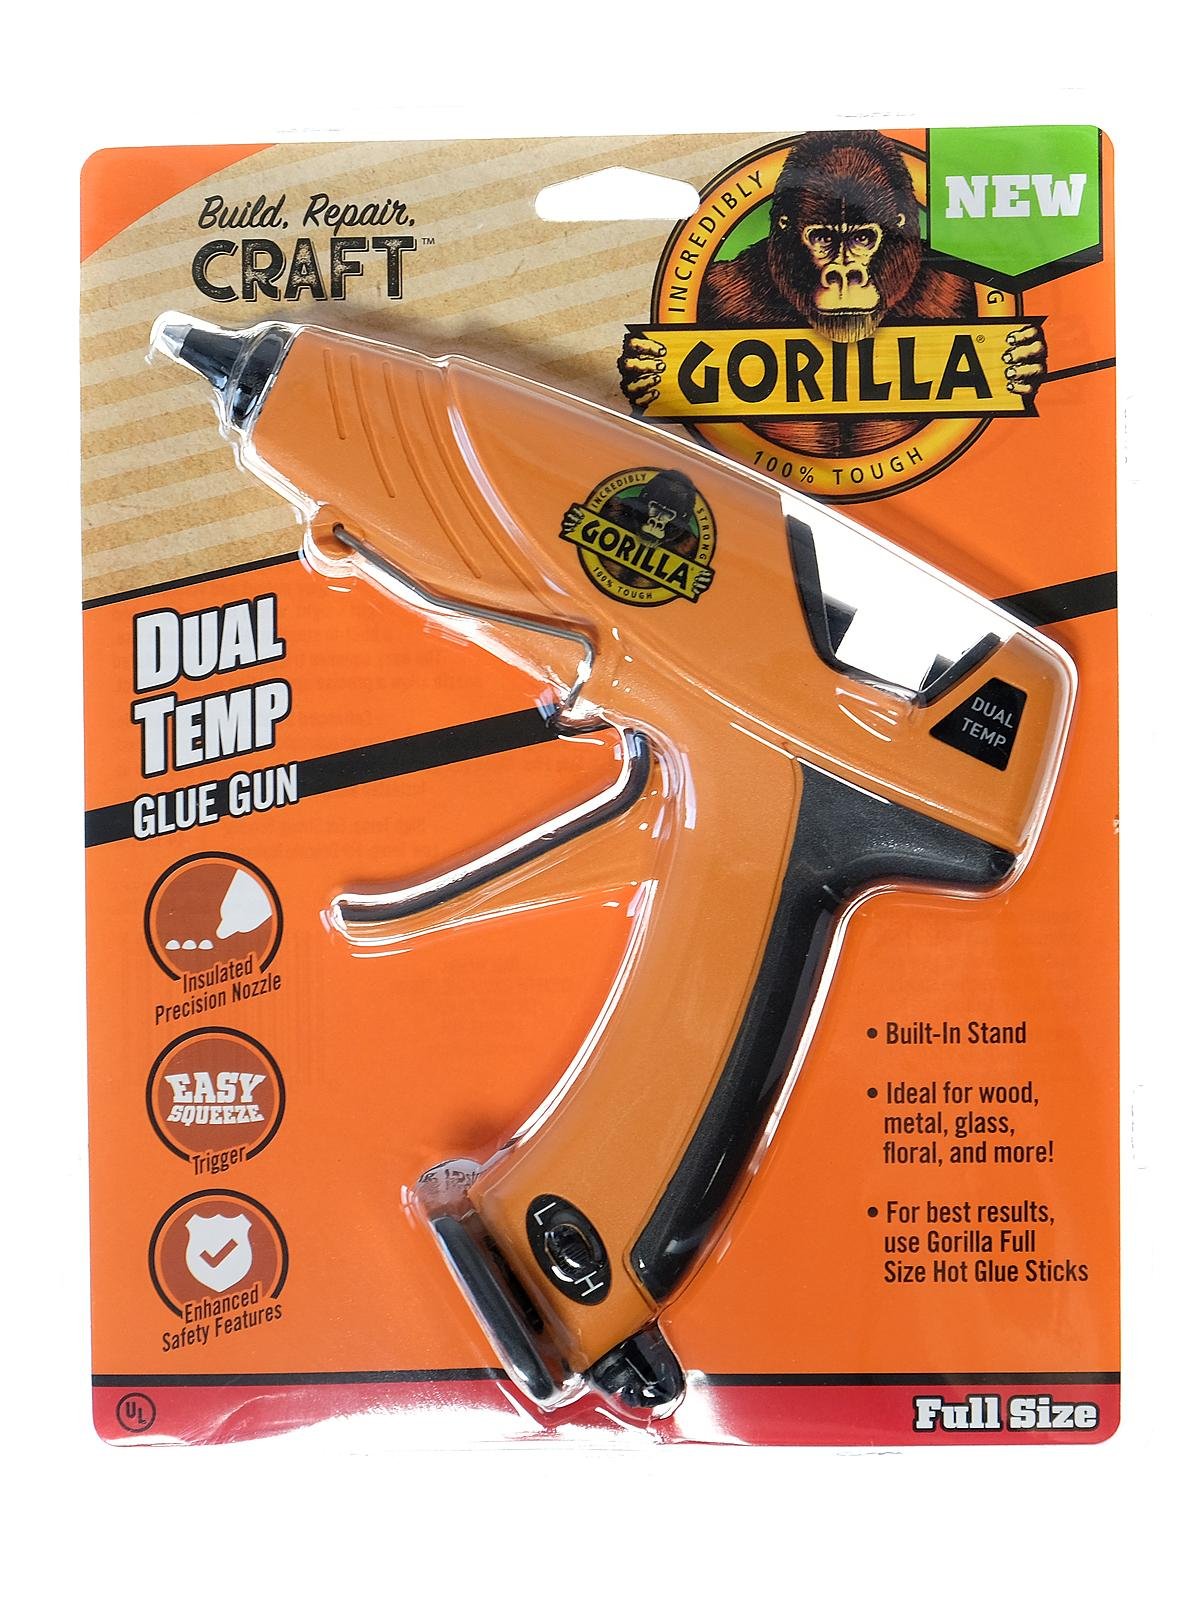 The Gorilla Glue Company Hot Glue Gun